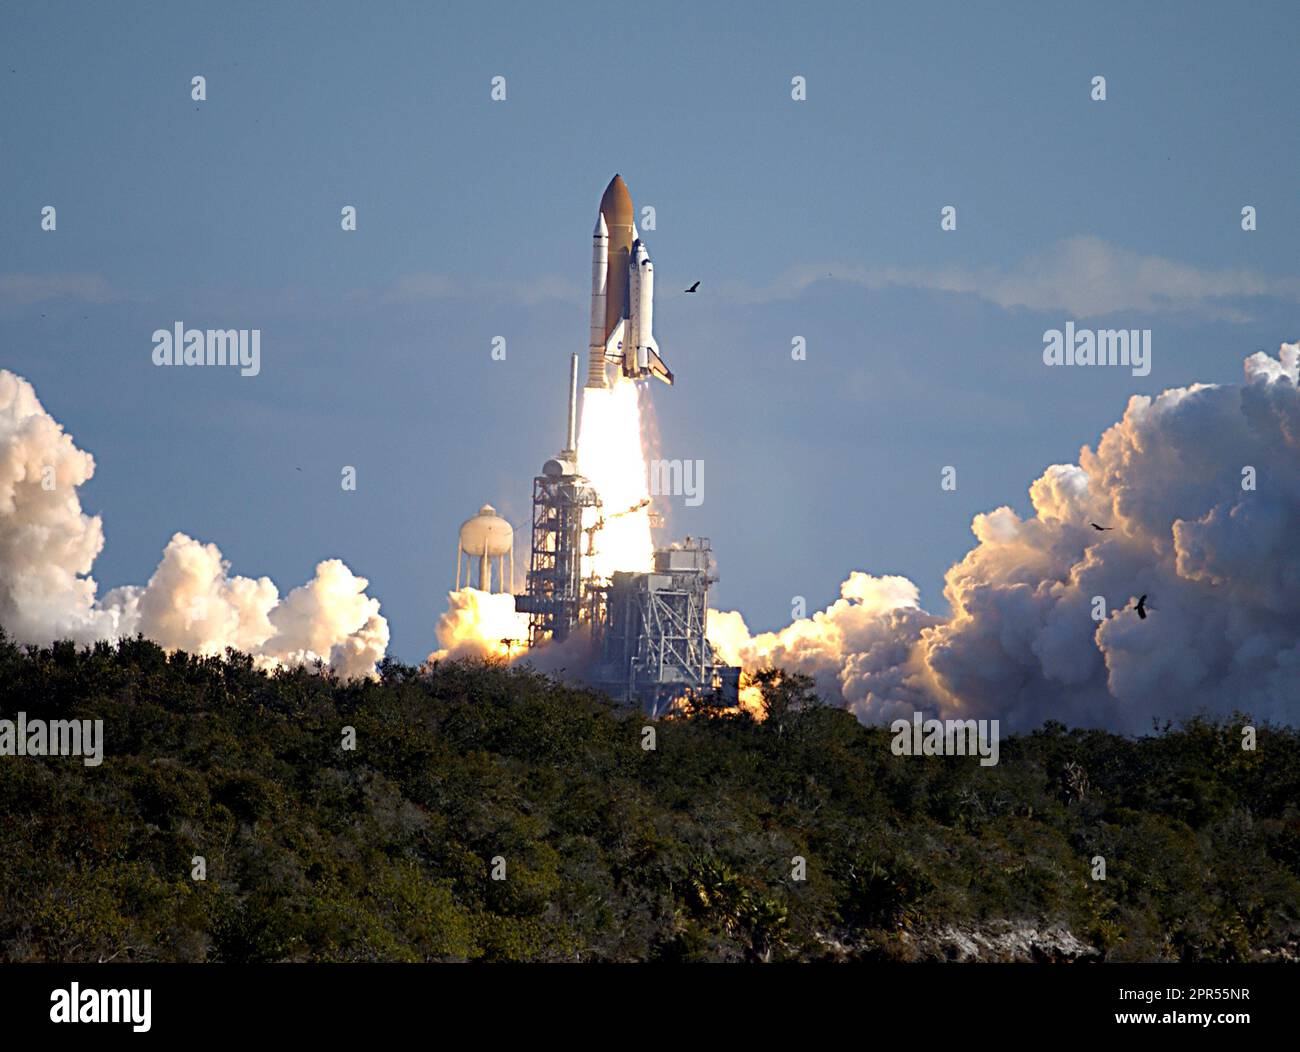 Durch einen wolkengespülten blauen Himmel über dem Launch Pad 39A schleudert der Space Shuttle Columbia auf Mission STS-107 in Richtung Weltraum. Nach dem Countdown kam es pünktlich um 10:39 EST zu einem Liftoff. Experimente im SPACEHAB-MODUL reichten von Materialwissenschaften bis zu Biowissenschaften. Stockfoto